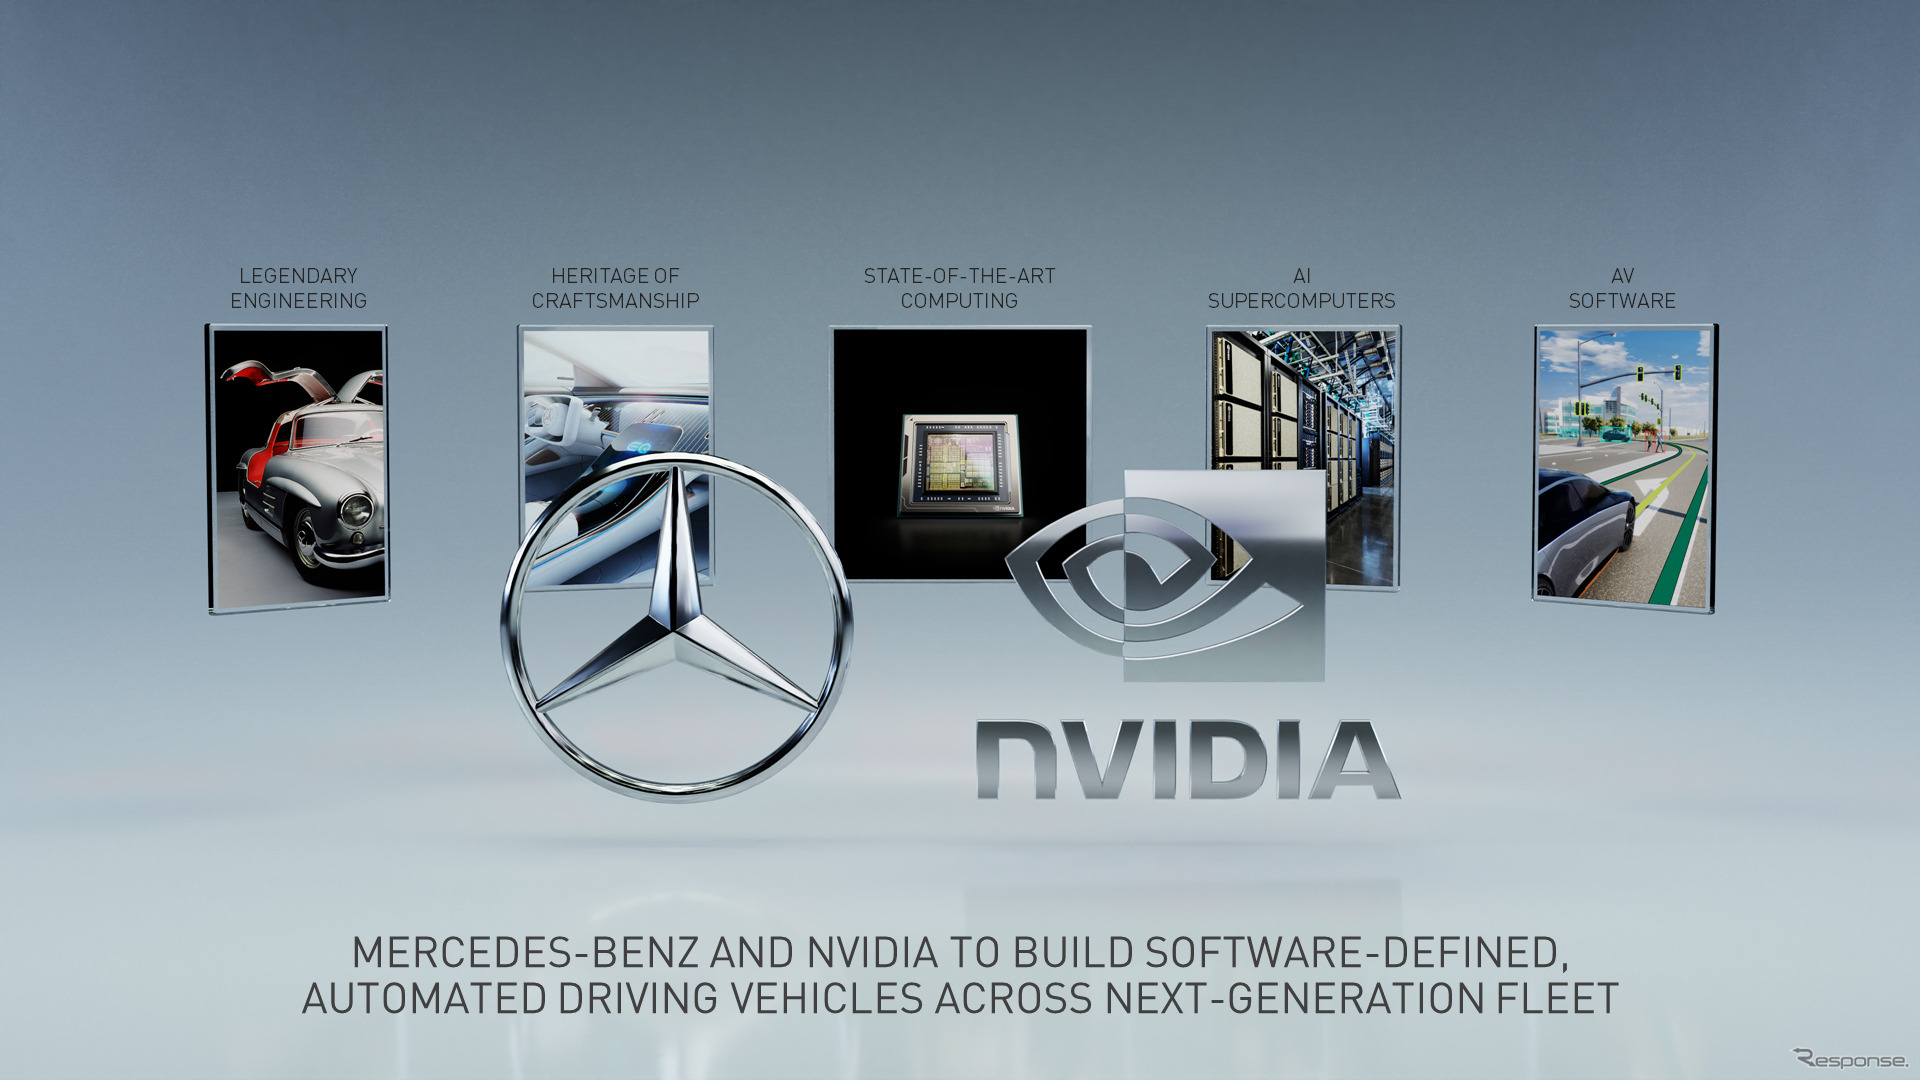 メルセデスベンツとエヌビディアの次世代自動運転技術の共同開発イメージ